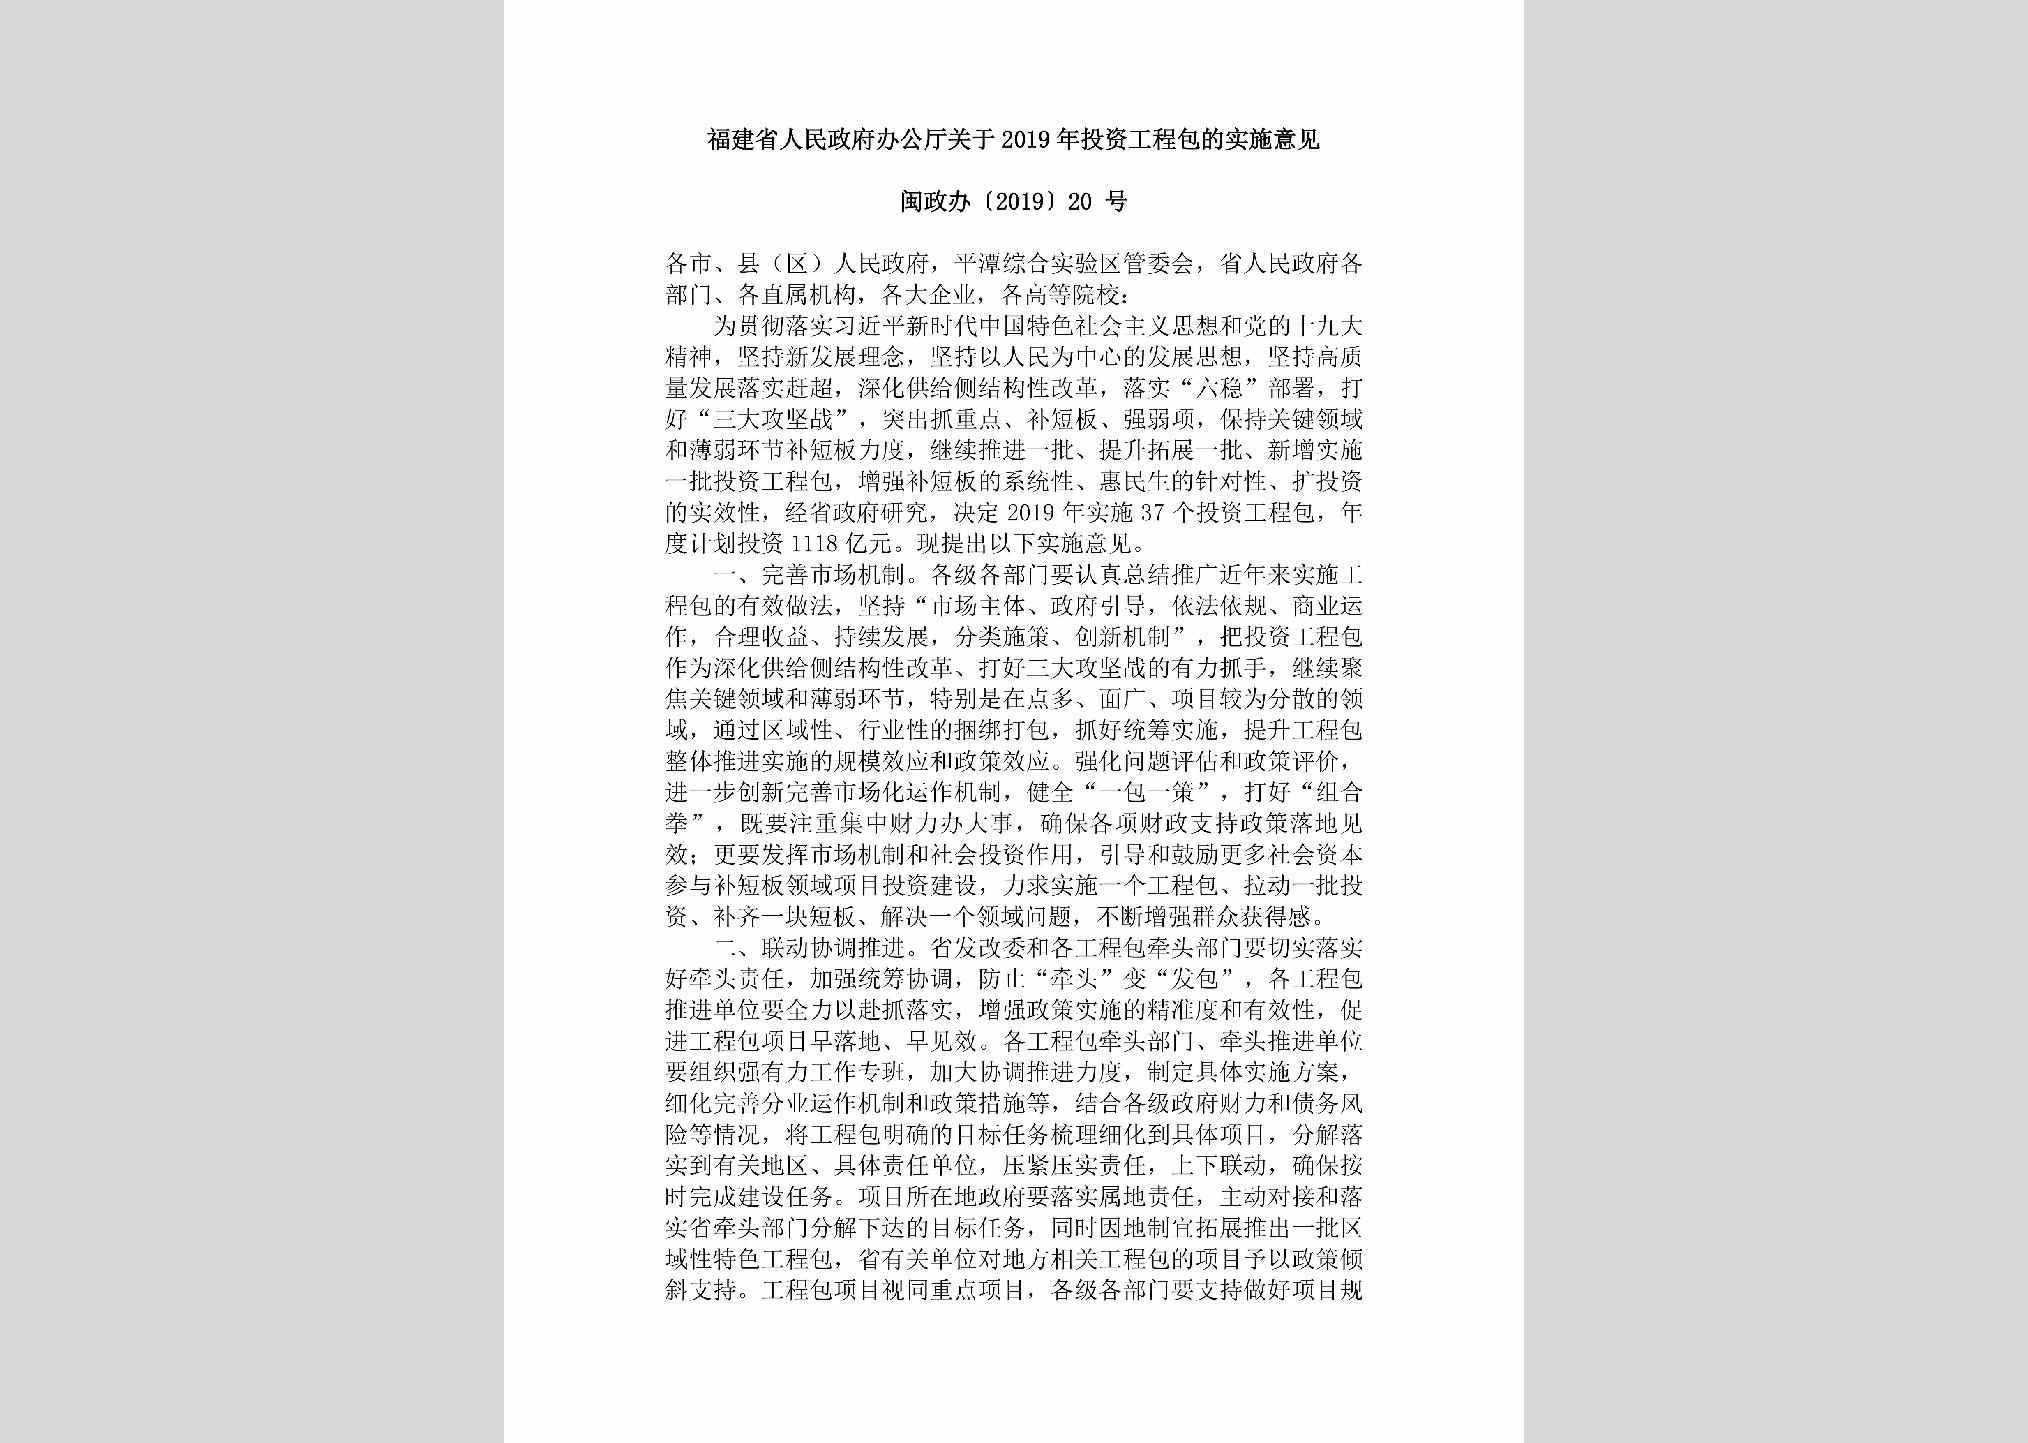 闽政办[2019]20号：福建省人民政府办公厅关于2019年投资工程包的实施意见